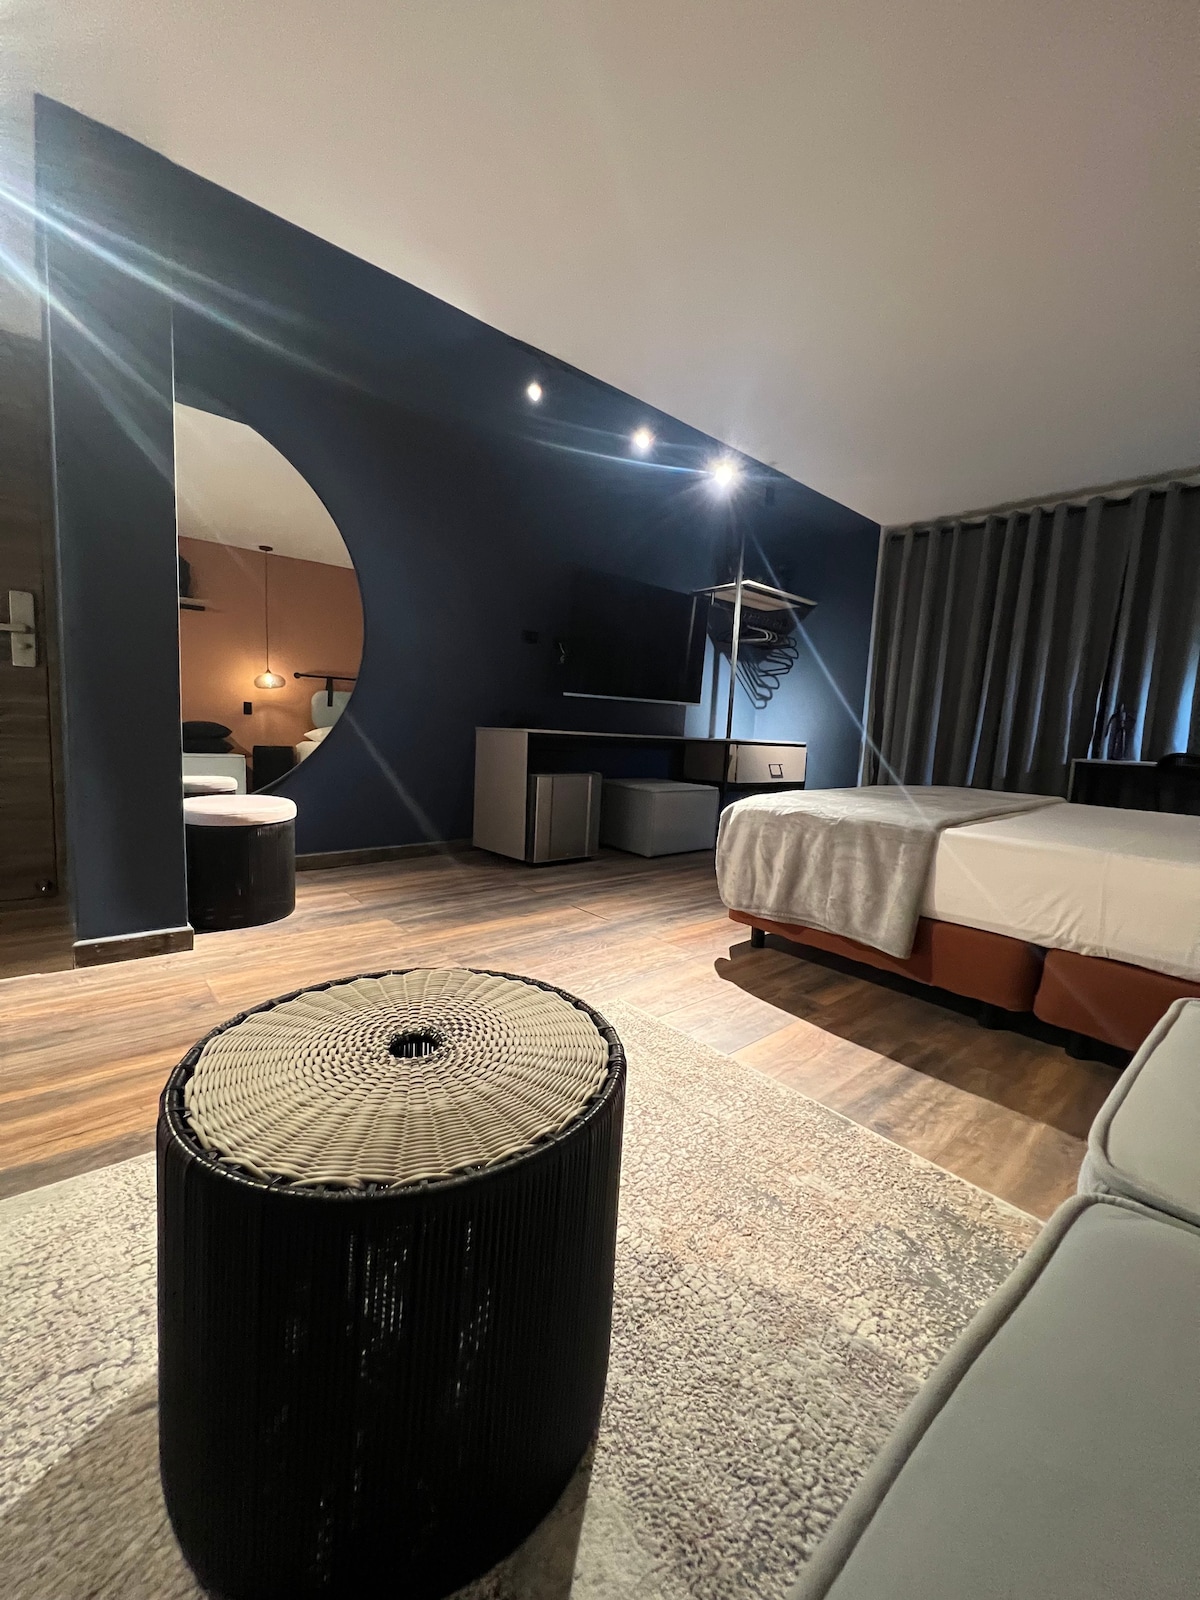 Exclusivo Room en tranquilo sector de Granada